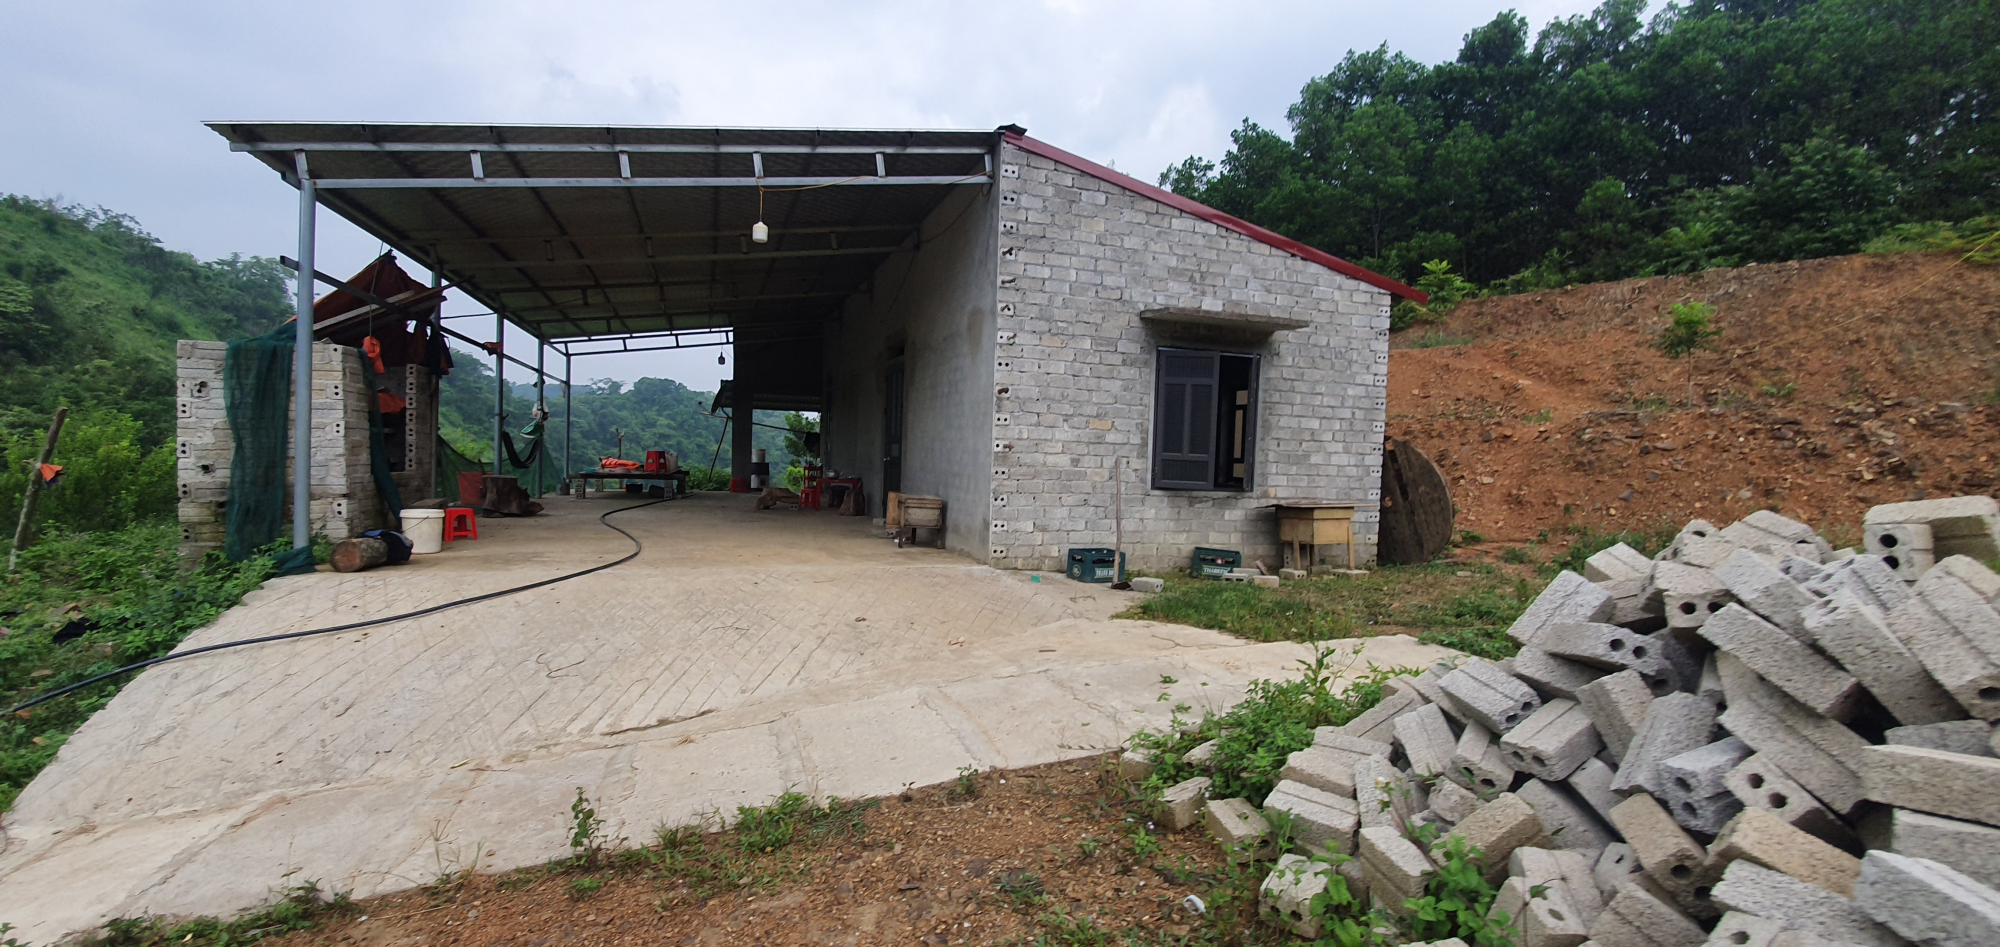 Khu nhà xây dựng trái phép trong rừng tại thôn Thành Tân, xã Thành Yên, huyện Thạch Thành cần sớm được phá giỡ.